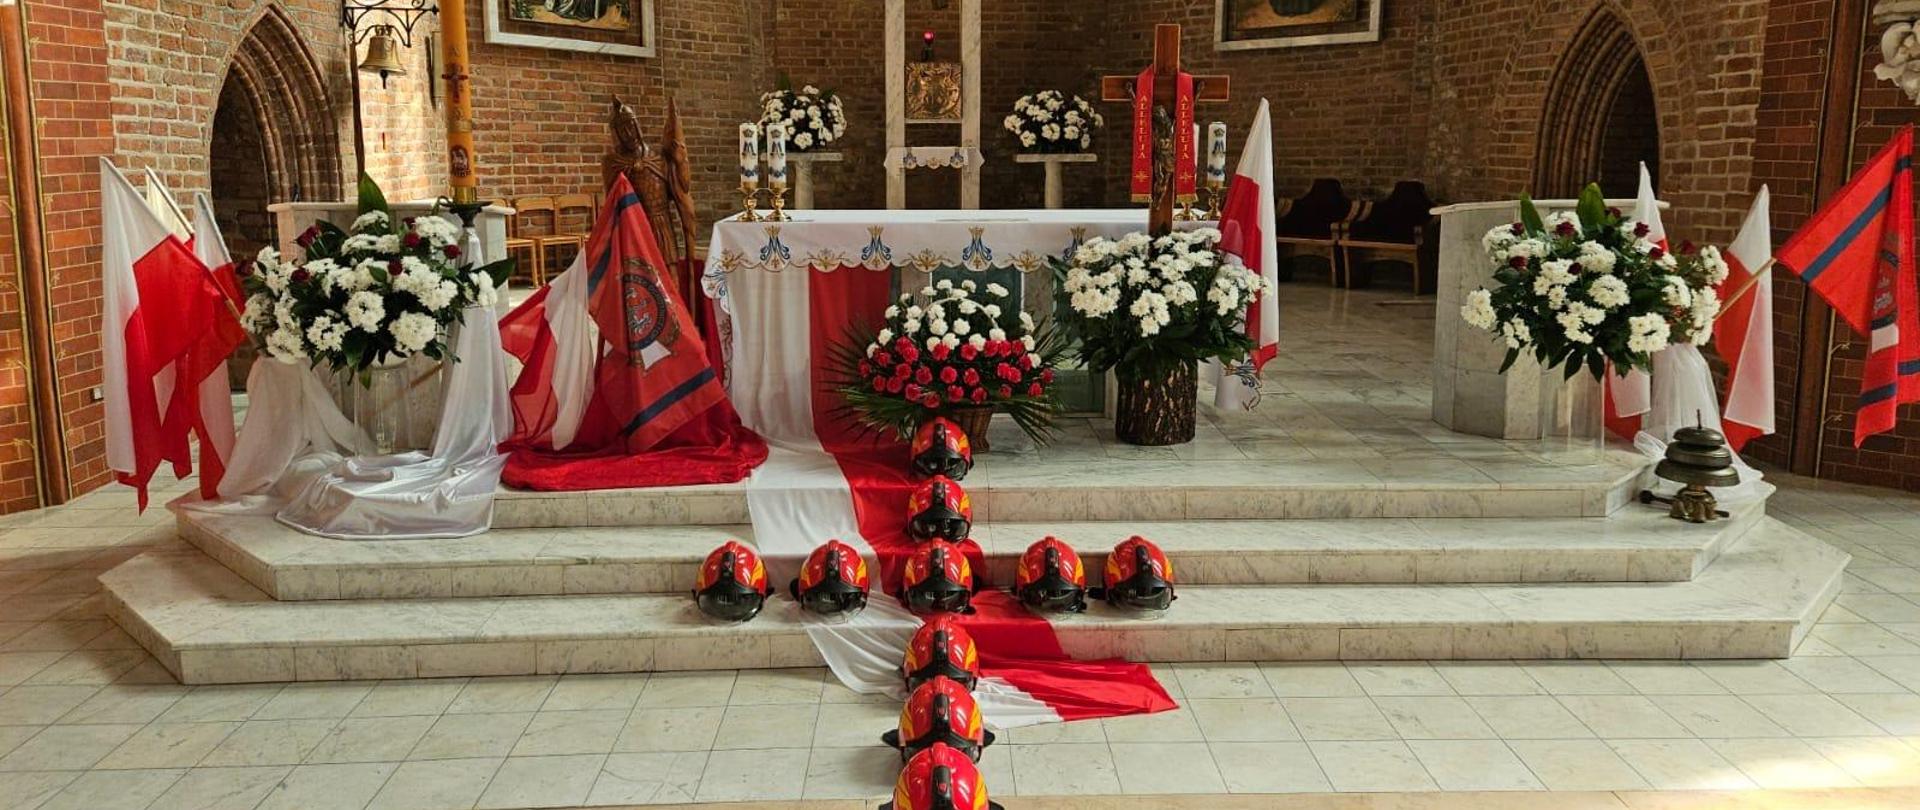 Ołtarz w kościele przystrojony we flagi biło czerwone, Na schodach leżą czerwone hełmy strażackie na kształt krzyża